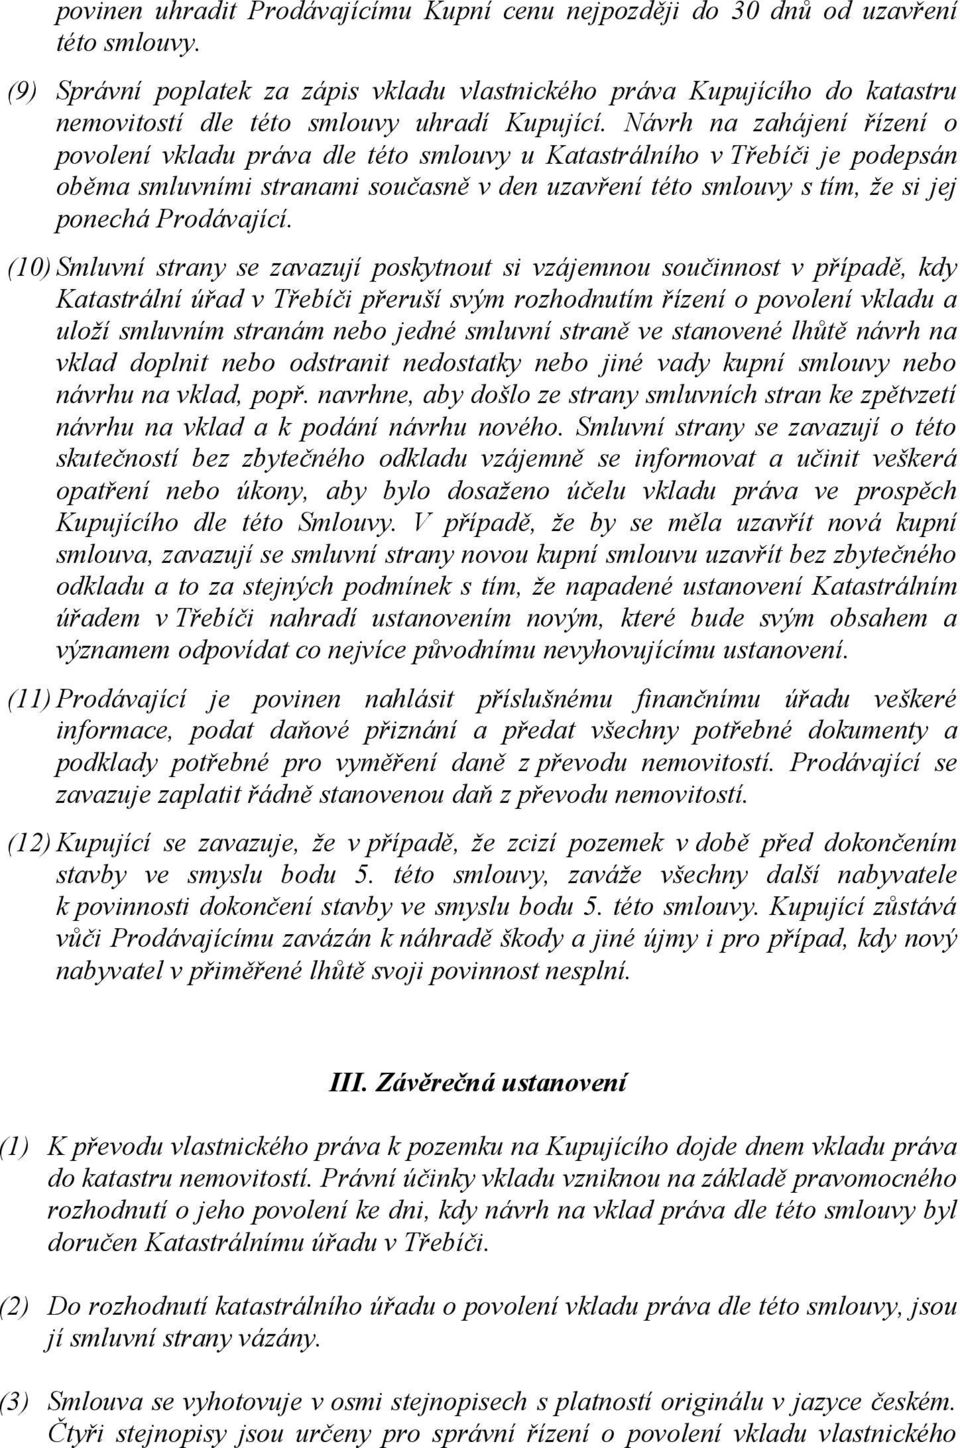 Návrh na zahájení řízení o povolení vkladu práva dle této smlouvy u Katastrálního v Třebíči je podepsán oběma smluvními stranami současně v den uzavření této smlouvy s tím, že si jej ponechá